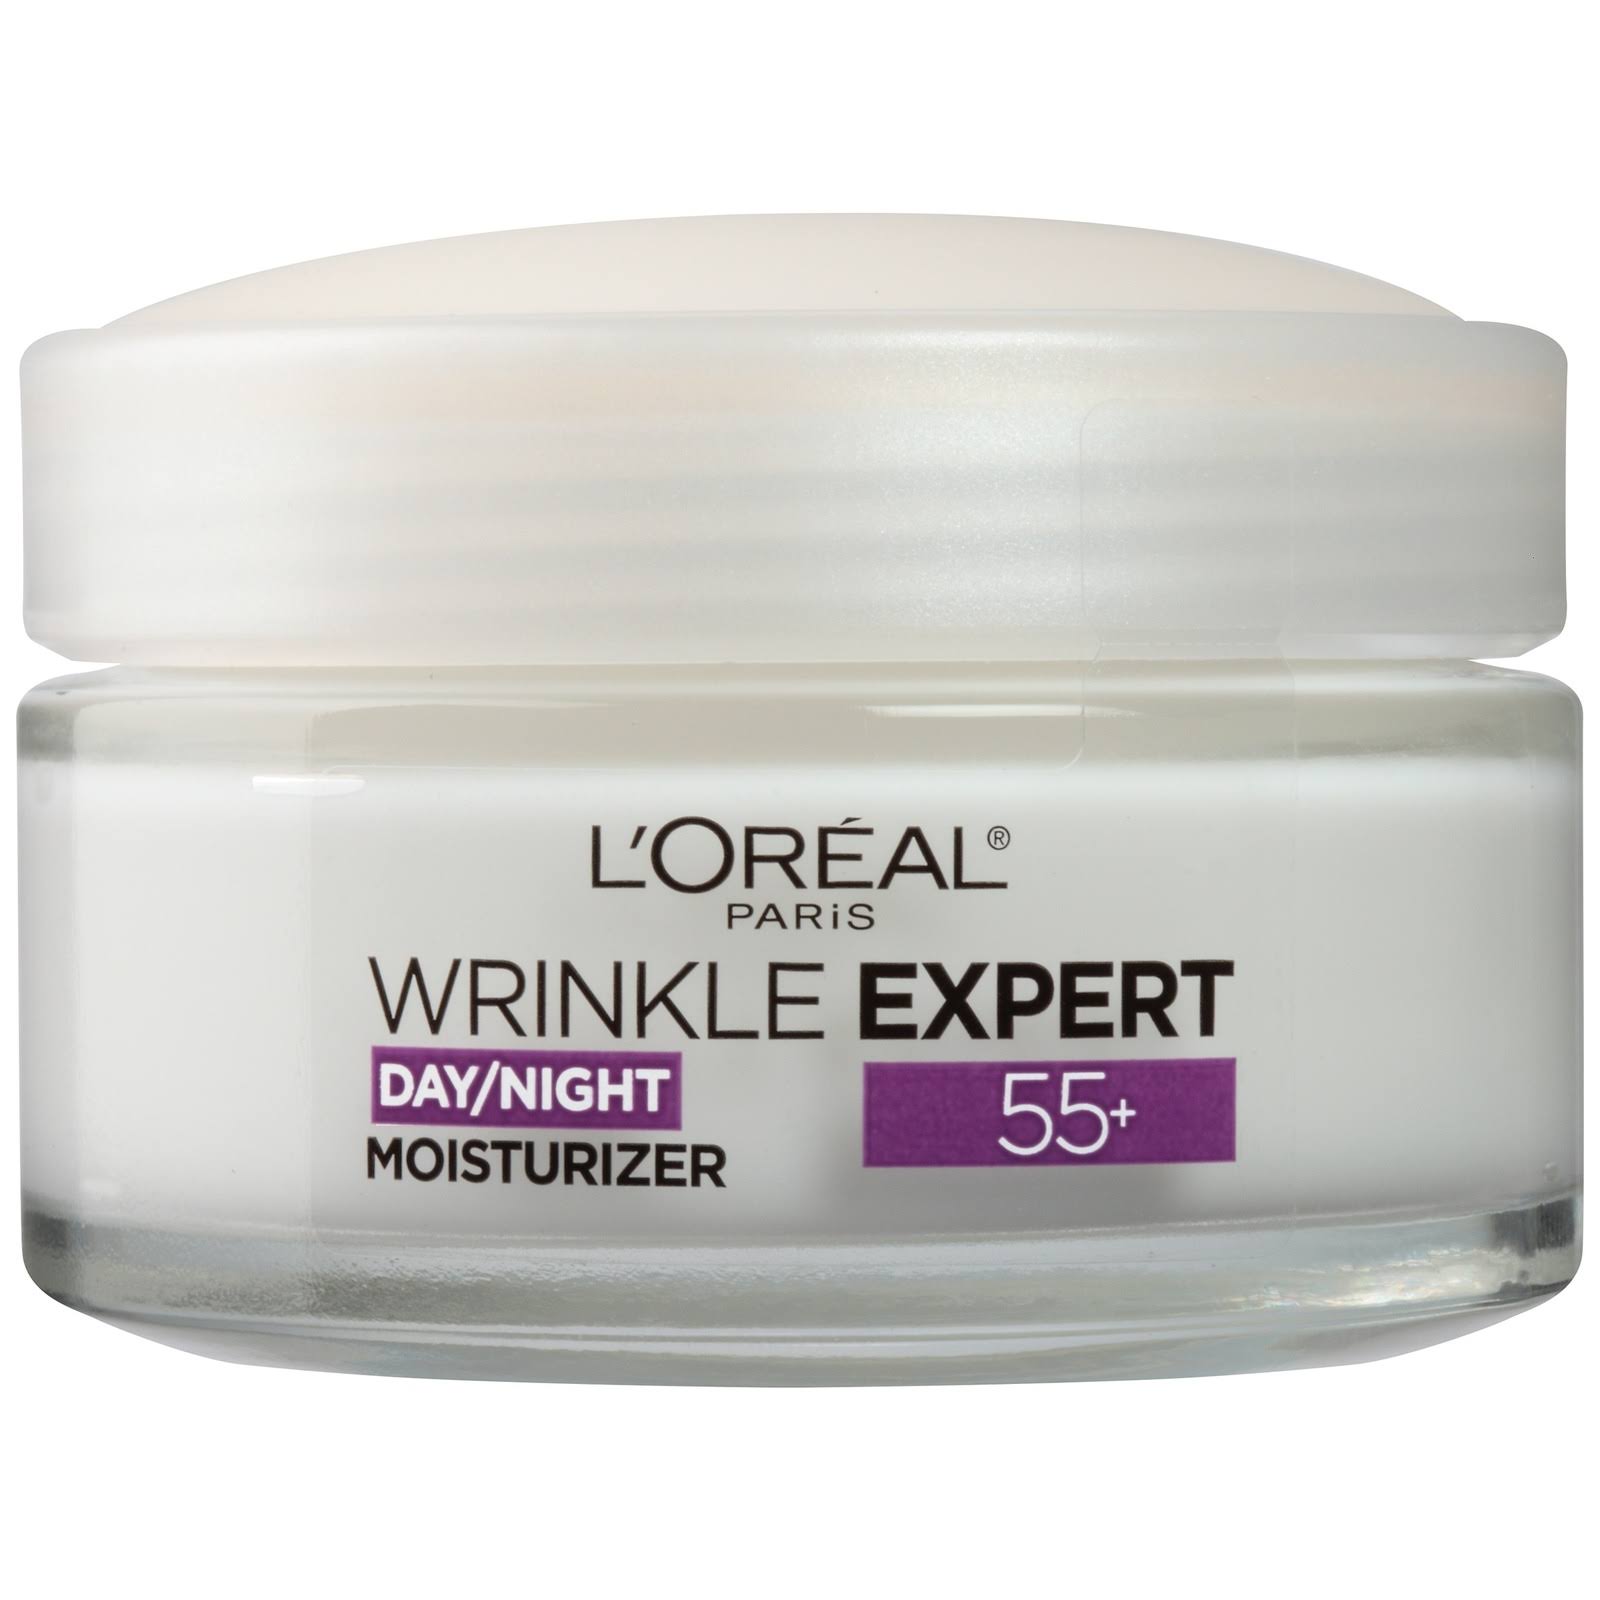 L'Oréal Paris Wrinkle Expert 55+ Moisturizer - 1.7oz